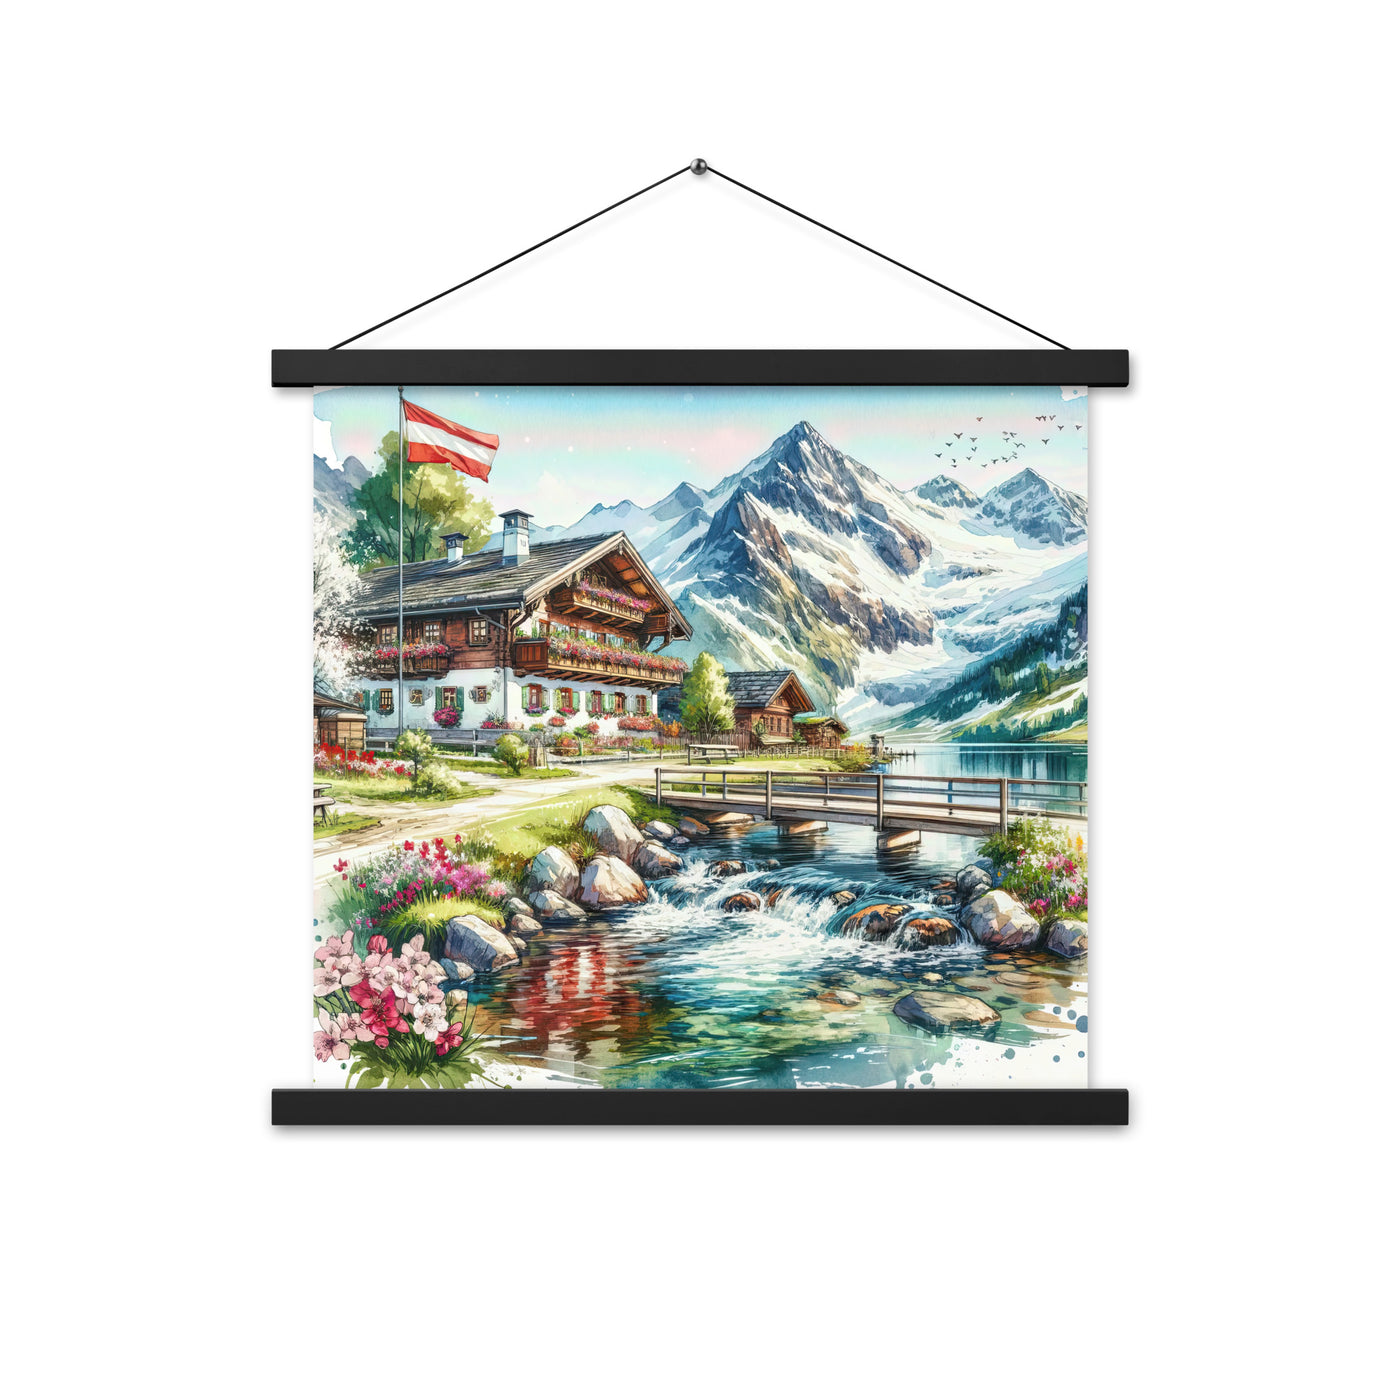 Aquarell der frühlingshaften Alpenkette mit österreichischer Flagge und schmelzendem Schnee - Enhanced Matte Paper Poster With Hanger berge xxx yyy zzz 45.7 x 45.7 cm